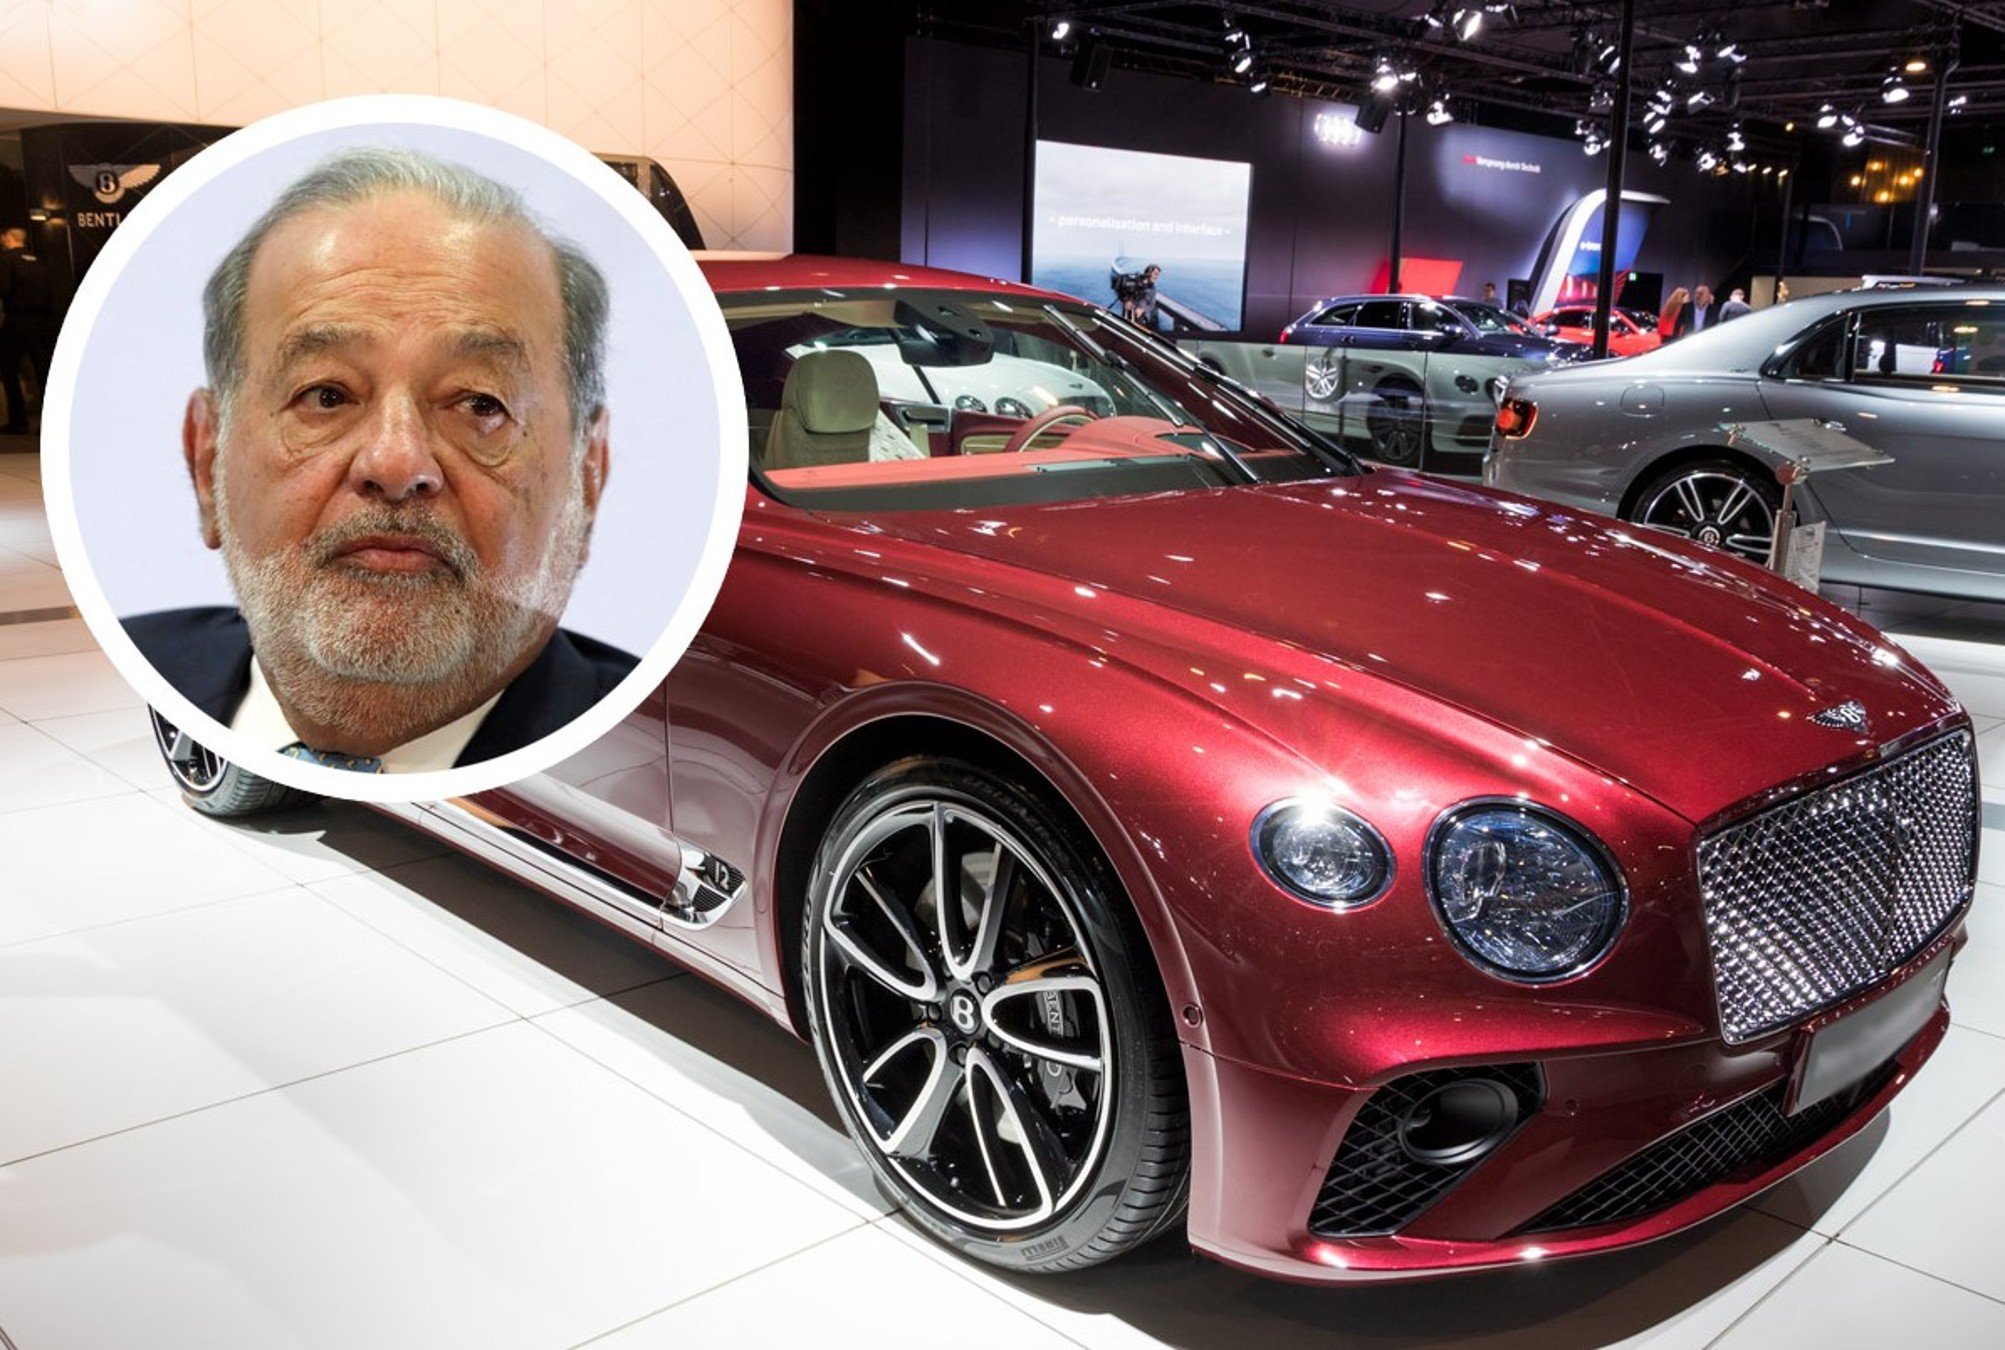 ¿Cuánto crees que cuesta el carro de Carlos Slim?